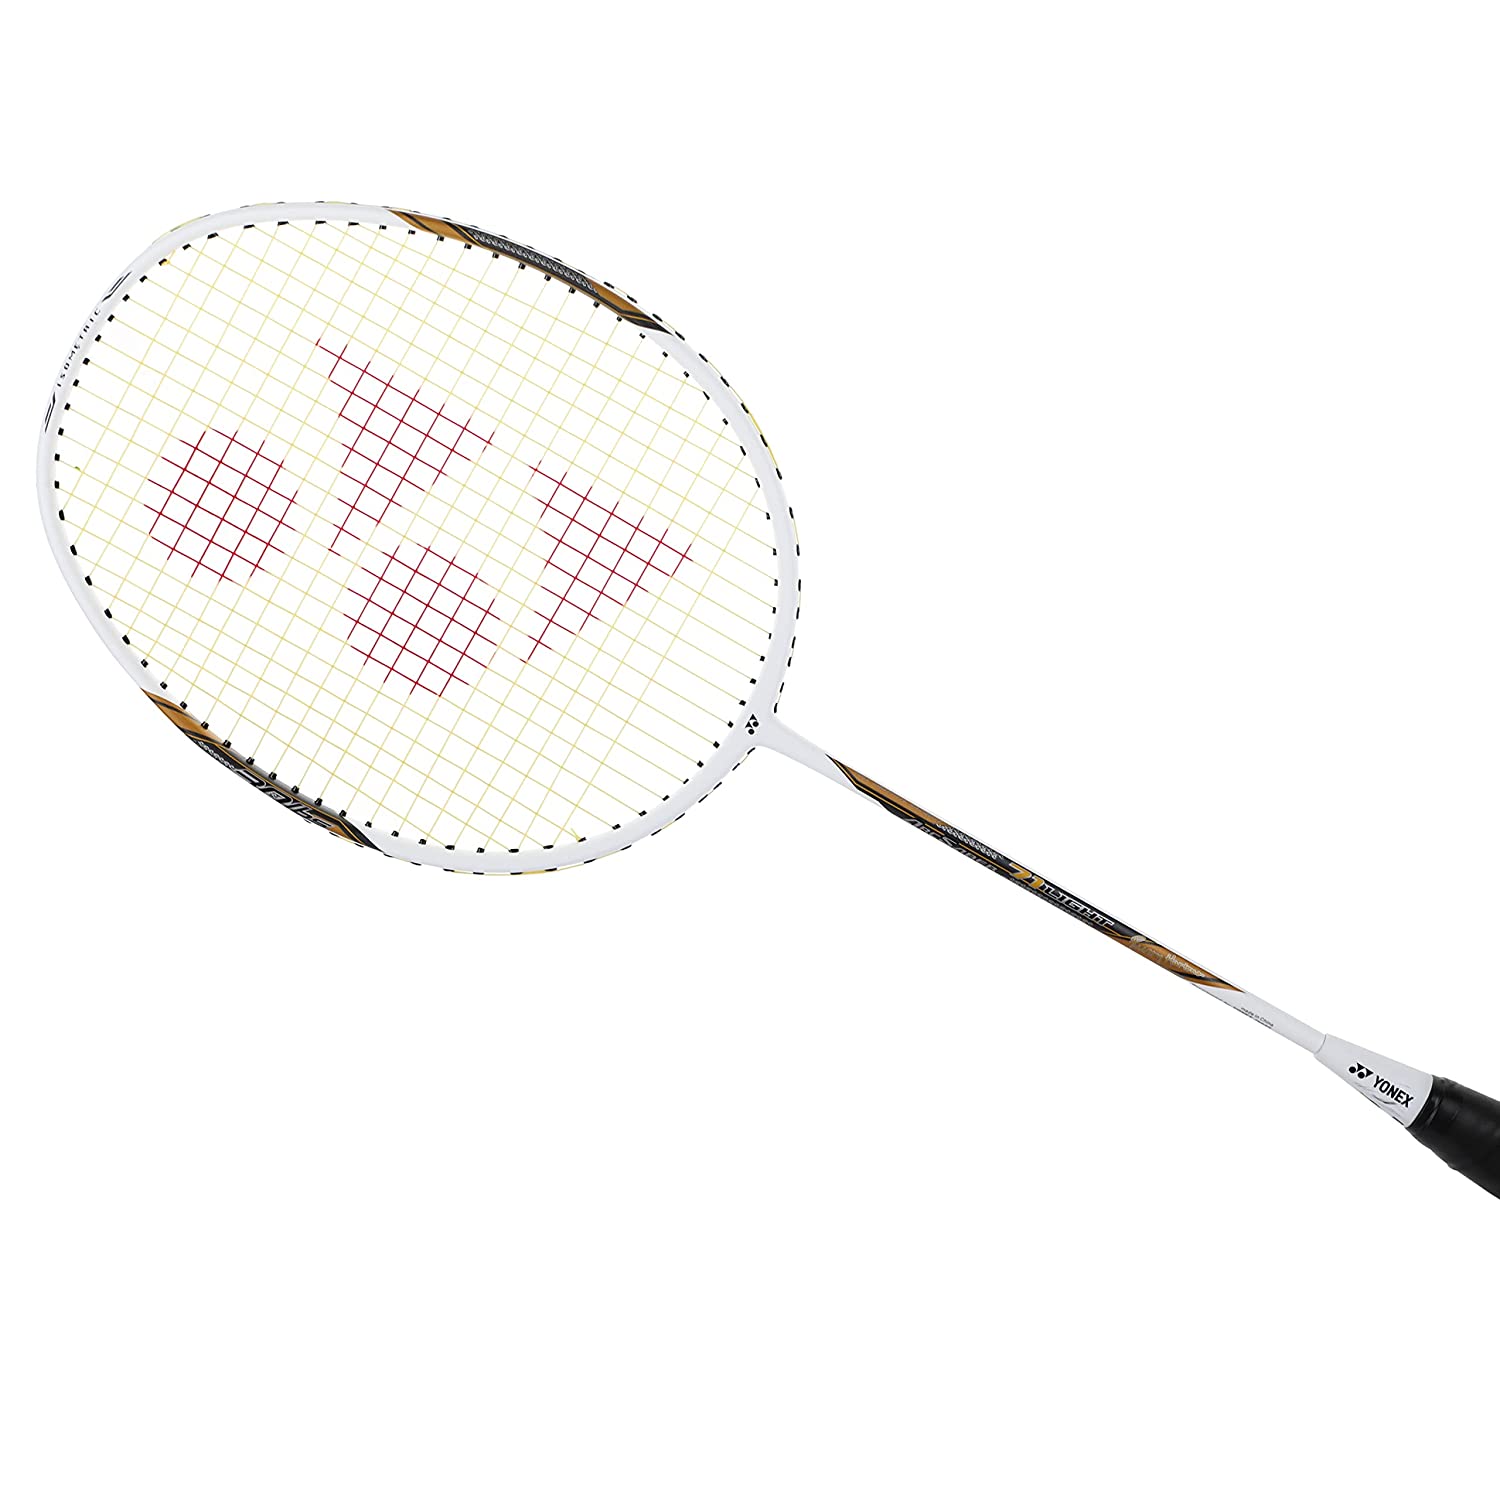 Yonex Arcsaber 71 Light White Graphite Badminton Racket (77 Grams, 30 lbs Tension) sppartos